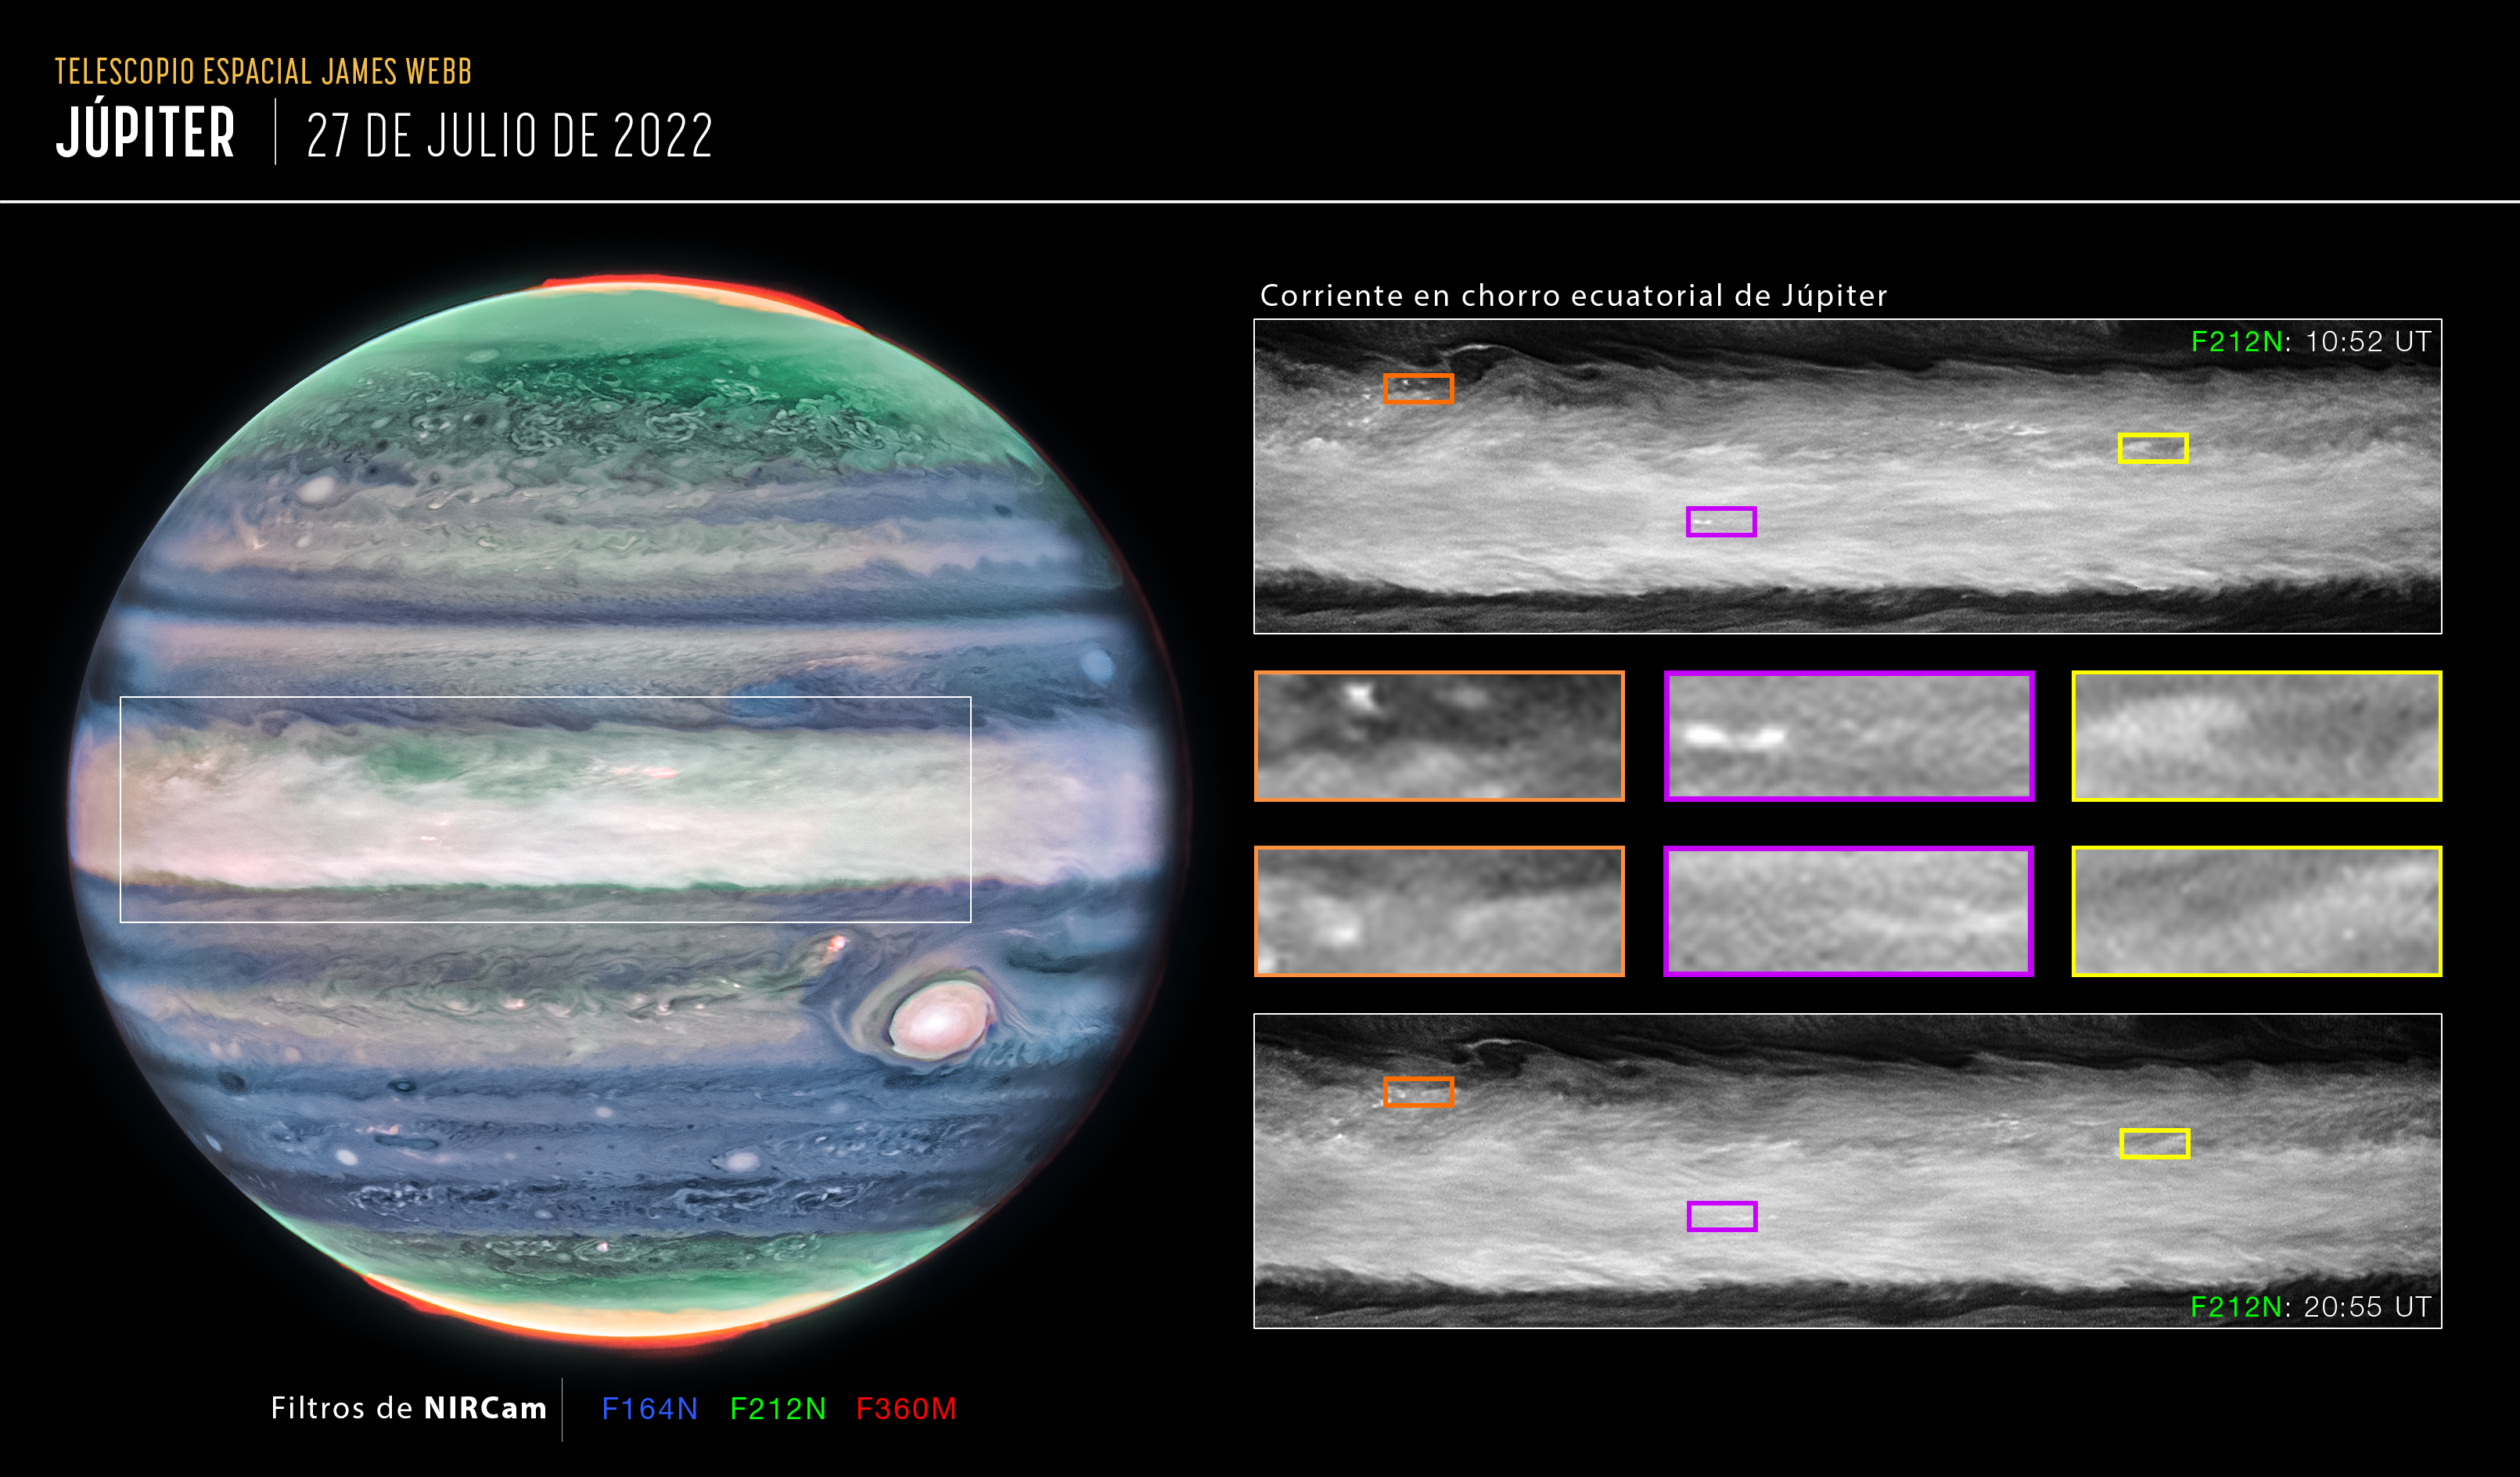 Imagen que muestra en detalle la corriente en chorro ecuatorial de Júpiter.